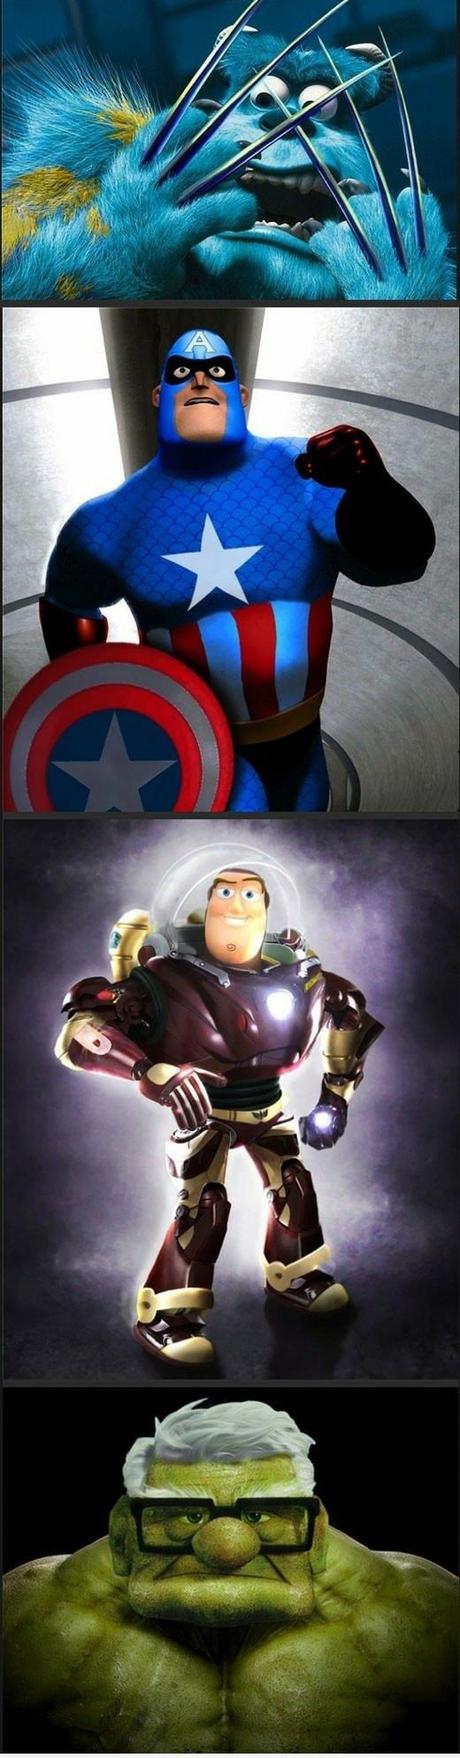 Mashup tra la Marvel e la Pixar